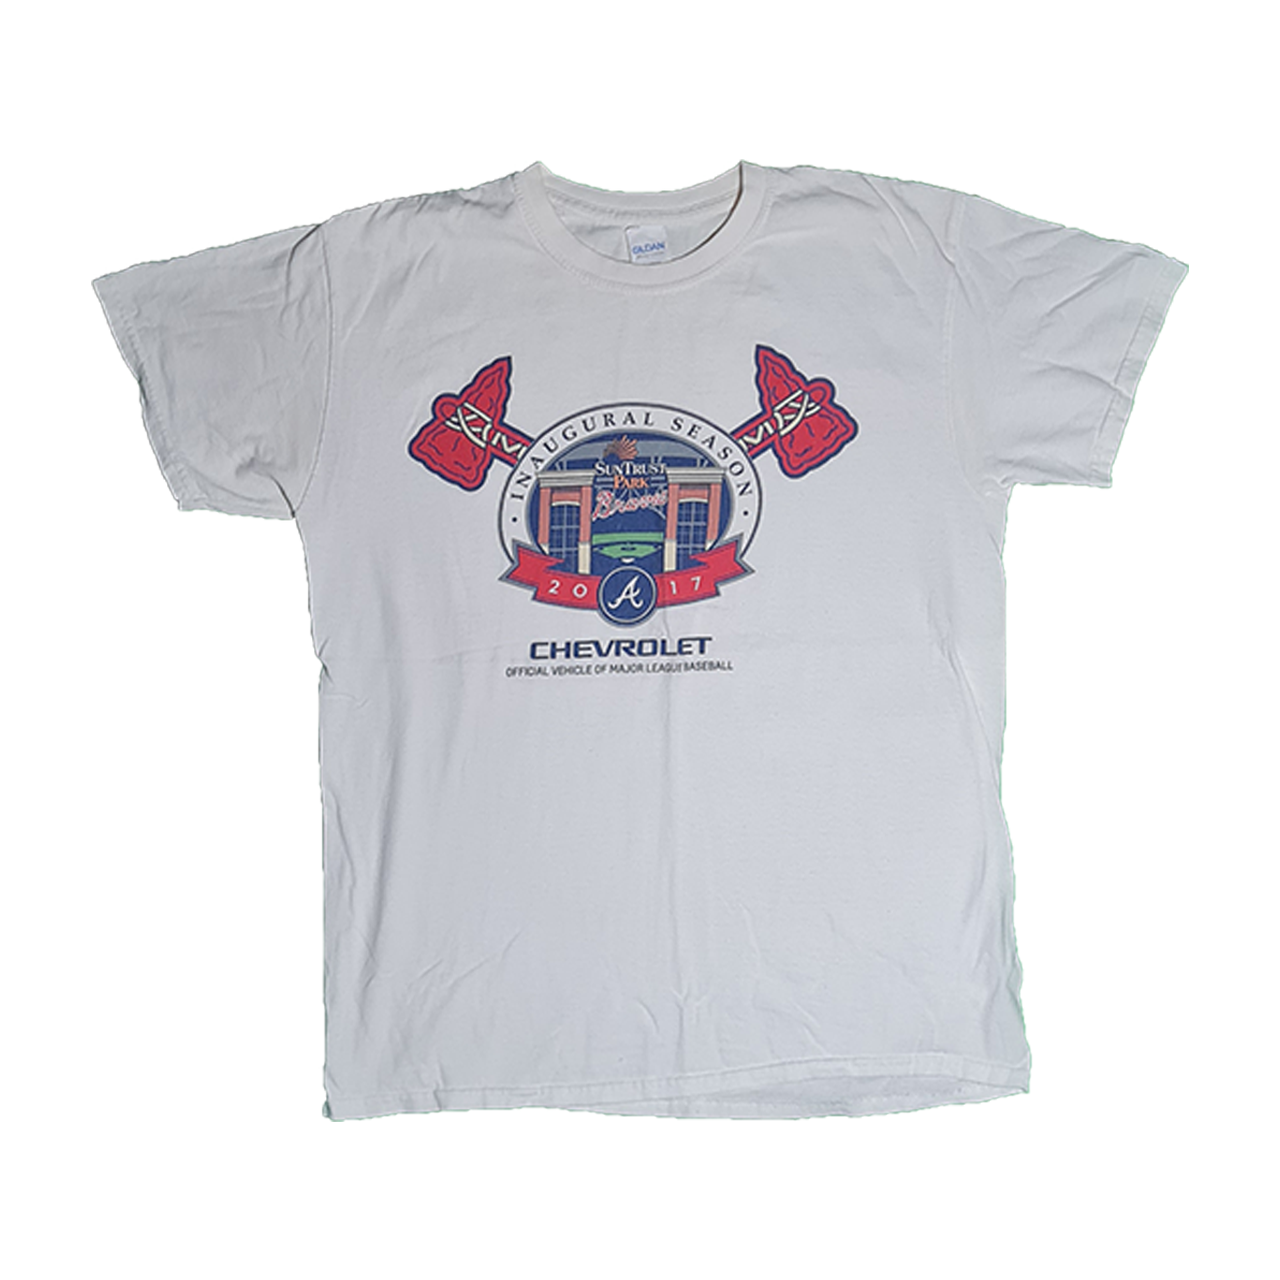 Truist Park Atlanta Braves Shirt